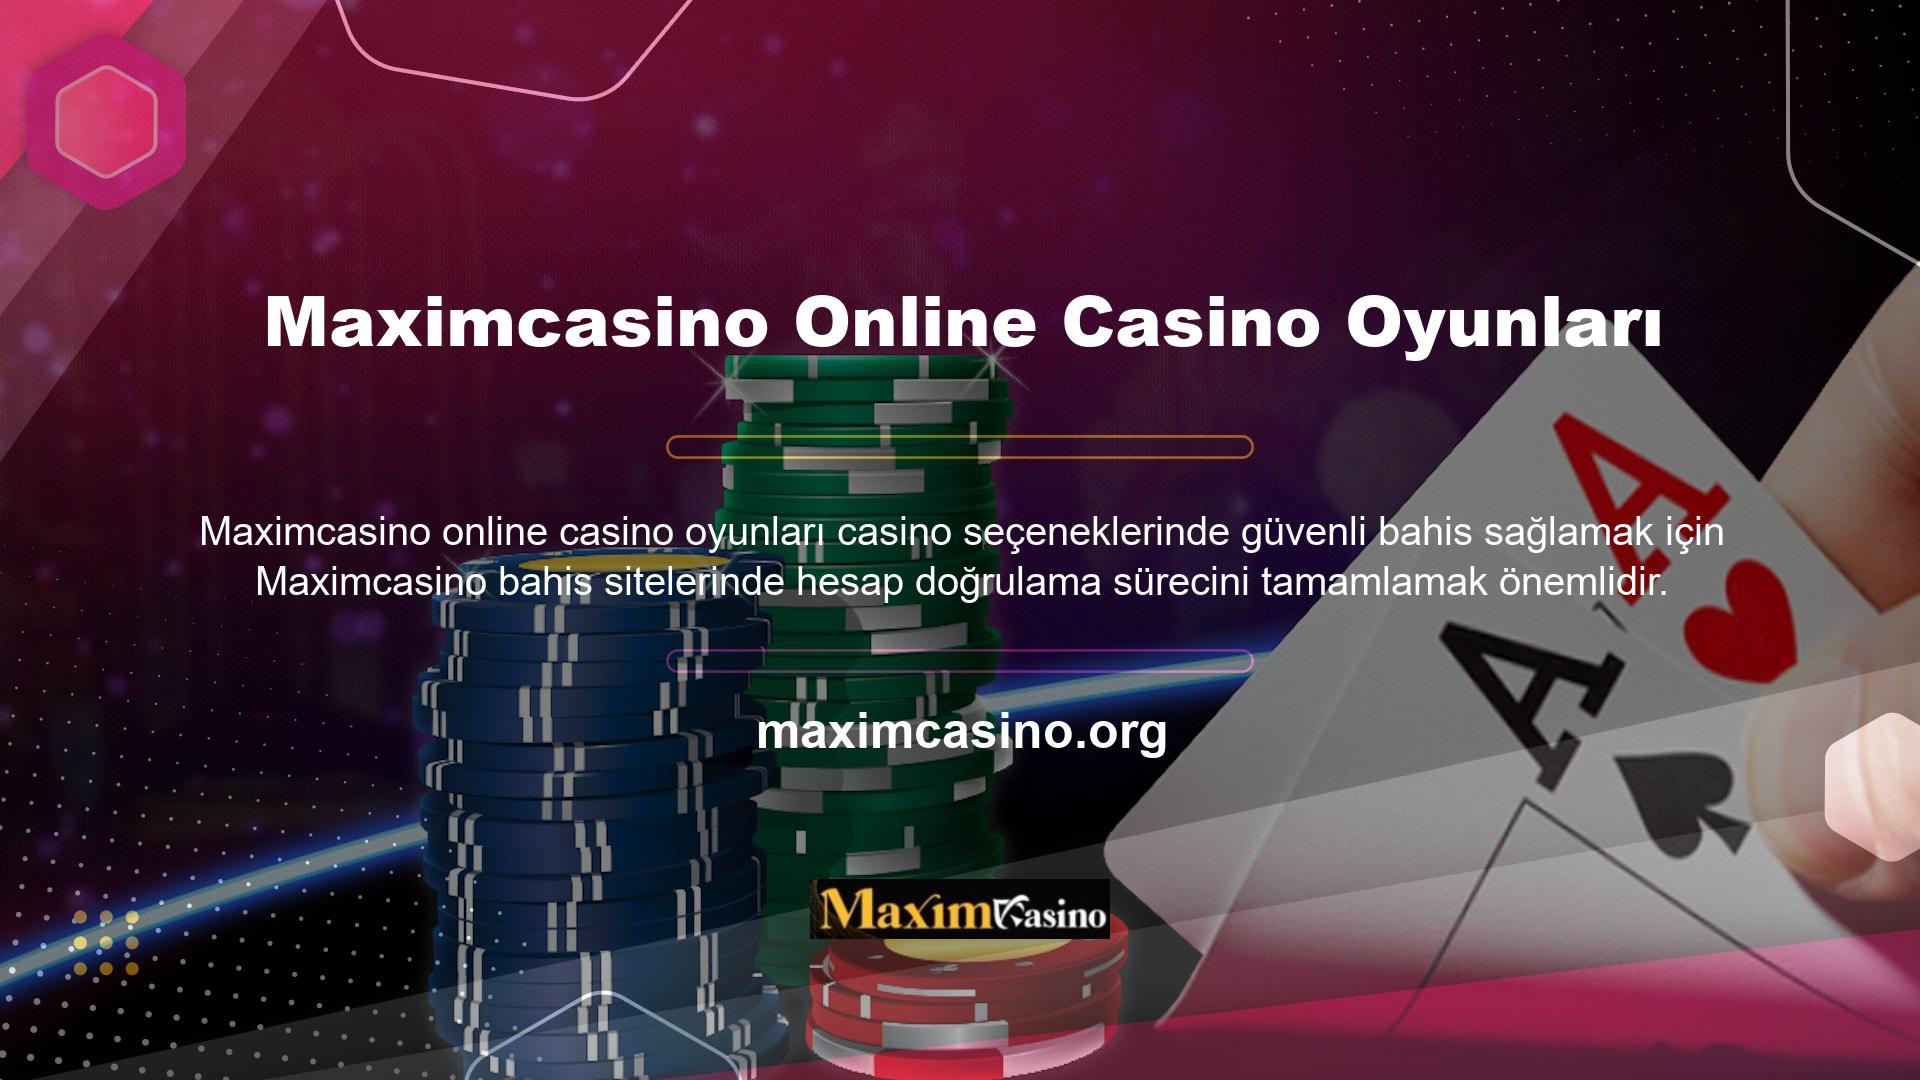 Maximcasino online casino oyun hesabınız için doğrulama işlemini tamamladıktan sonra, web sitesine gönderilen e-posta adresine bir kod alacaksınız